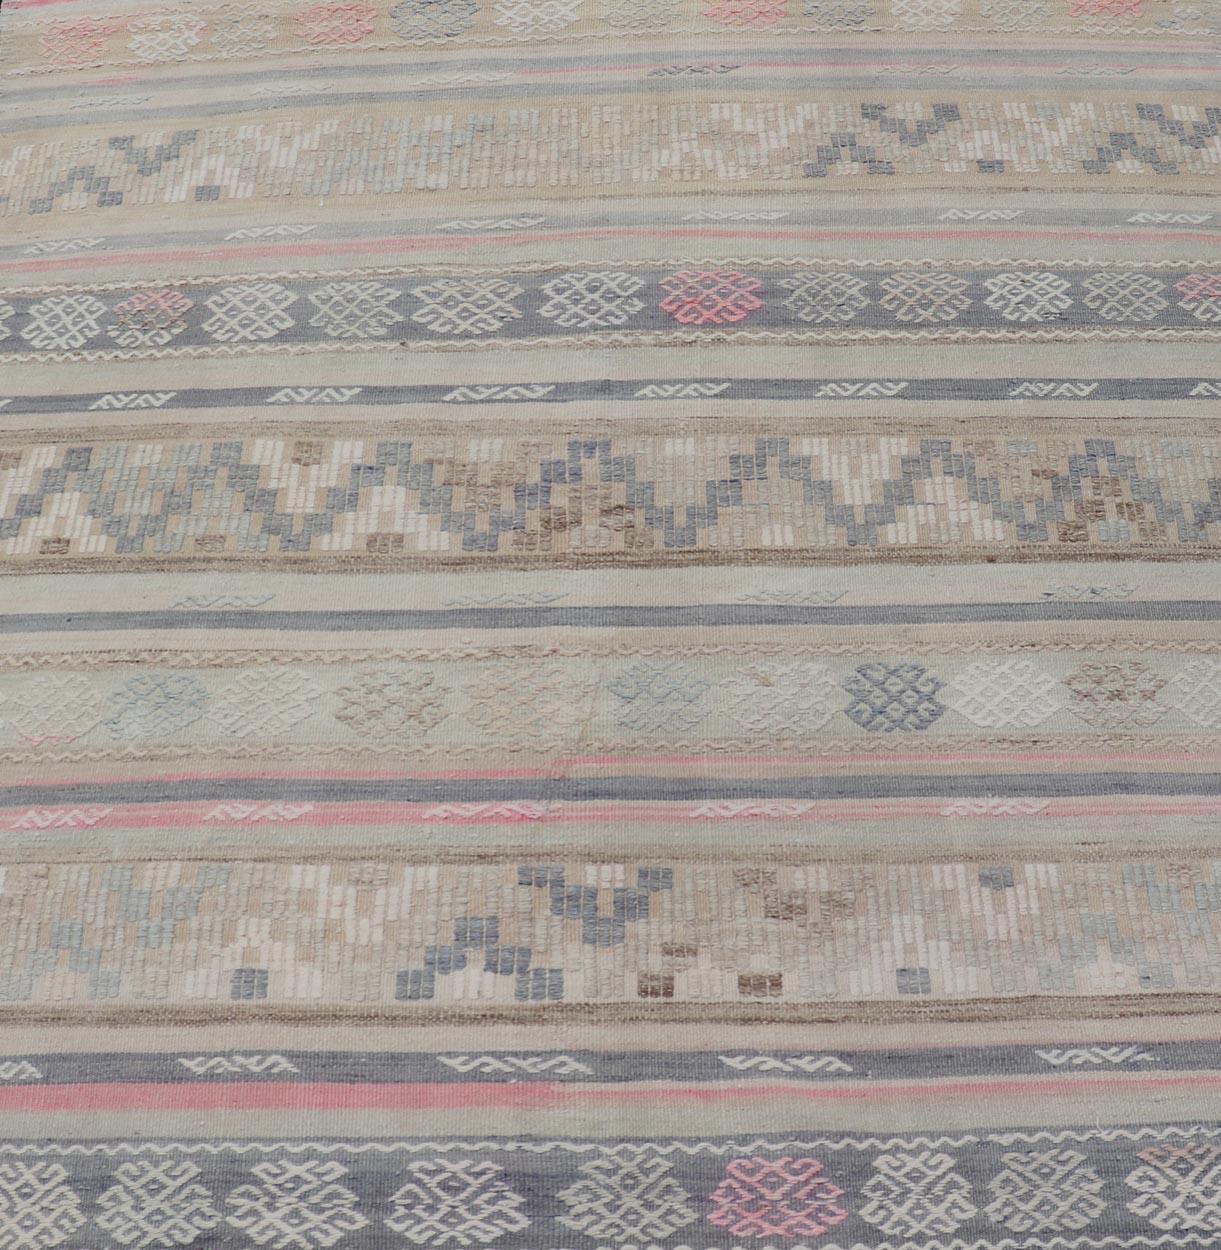  Streifen und Stickereien Türkischer Flachgewebe-Kilim in verschiedenen gedeckten Farben. Keivan Woven Arts / Teppich EN-15178, Herkunftsland / Art: Türkei / Kelim, um 1950

Maße: 5'4 x 5'10 

Dieser Kelimteppich aus der Türkei zeichnet sich durch